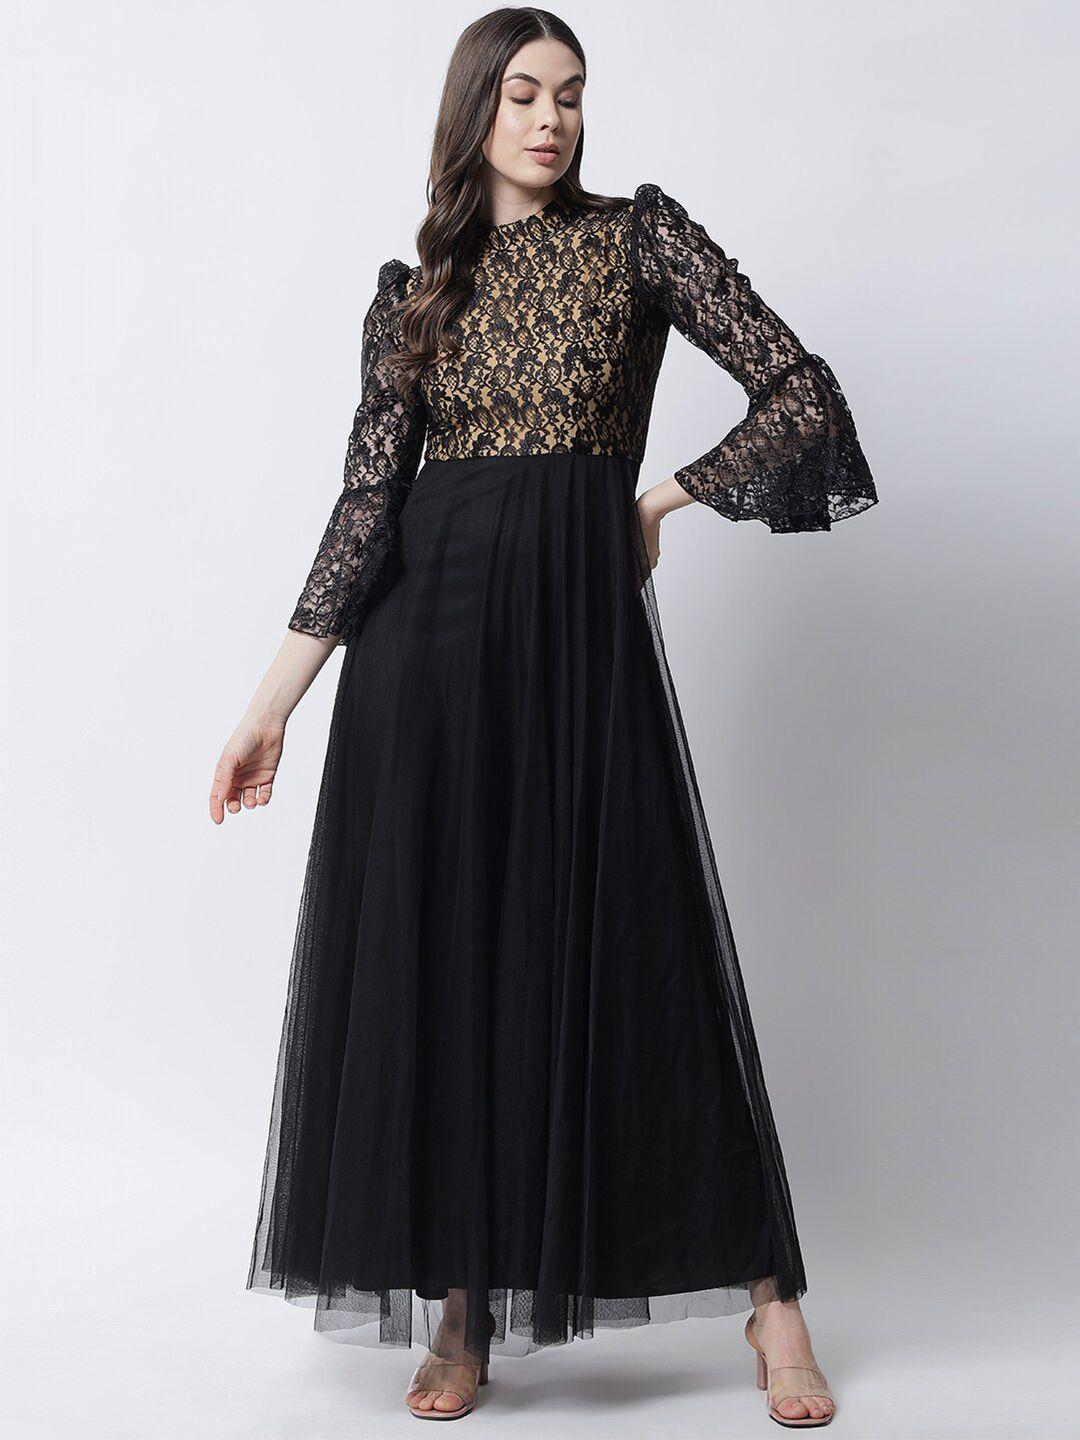 marc louis black floral net maxi dress